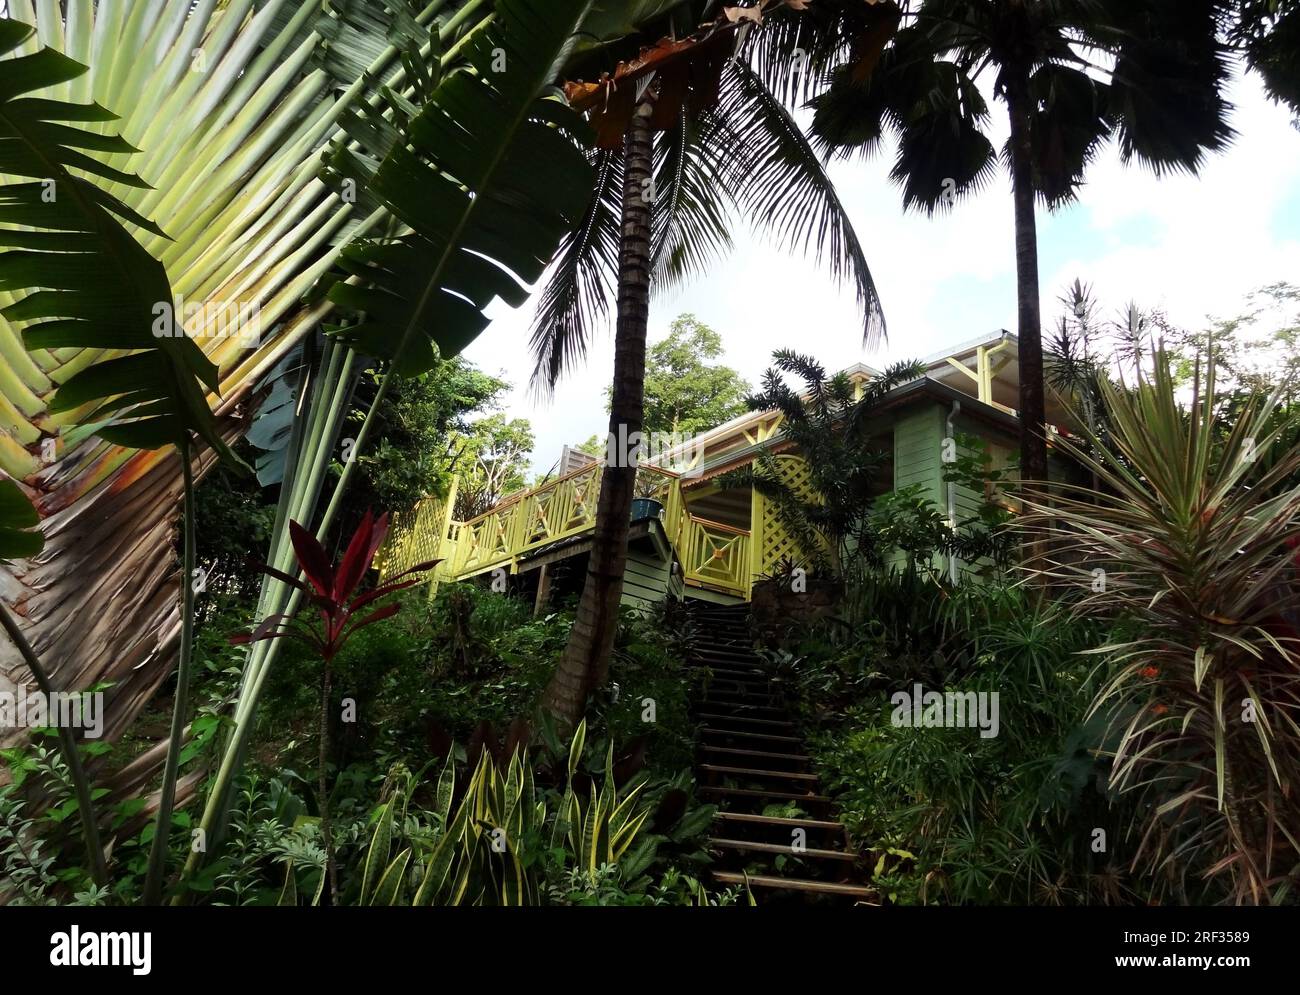 karibische Landschaft einschließlich eines Hauses in tropischer Vegetation Stockfoto